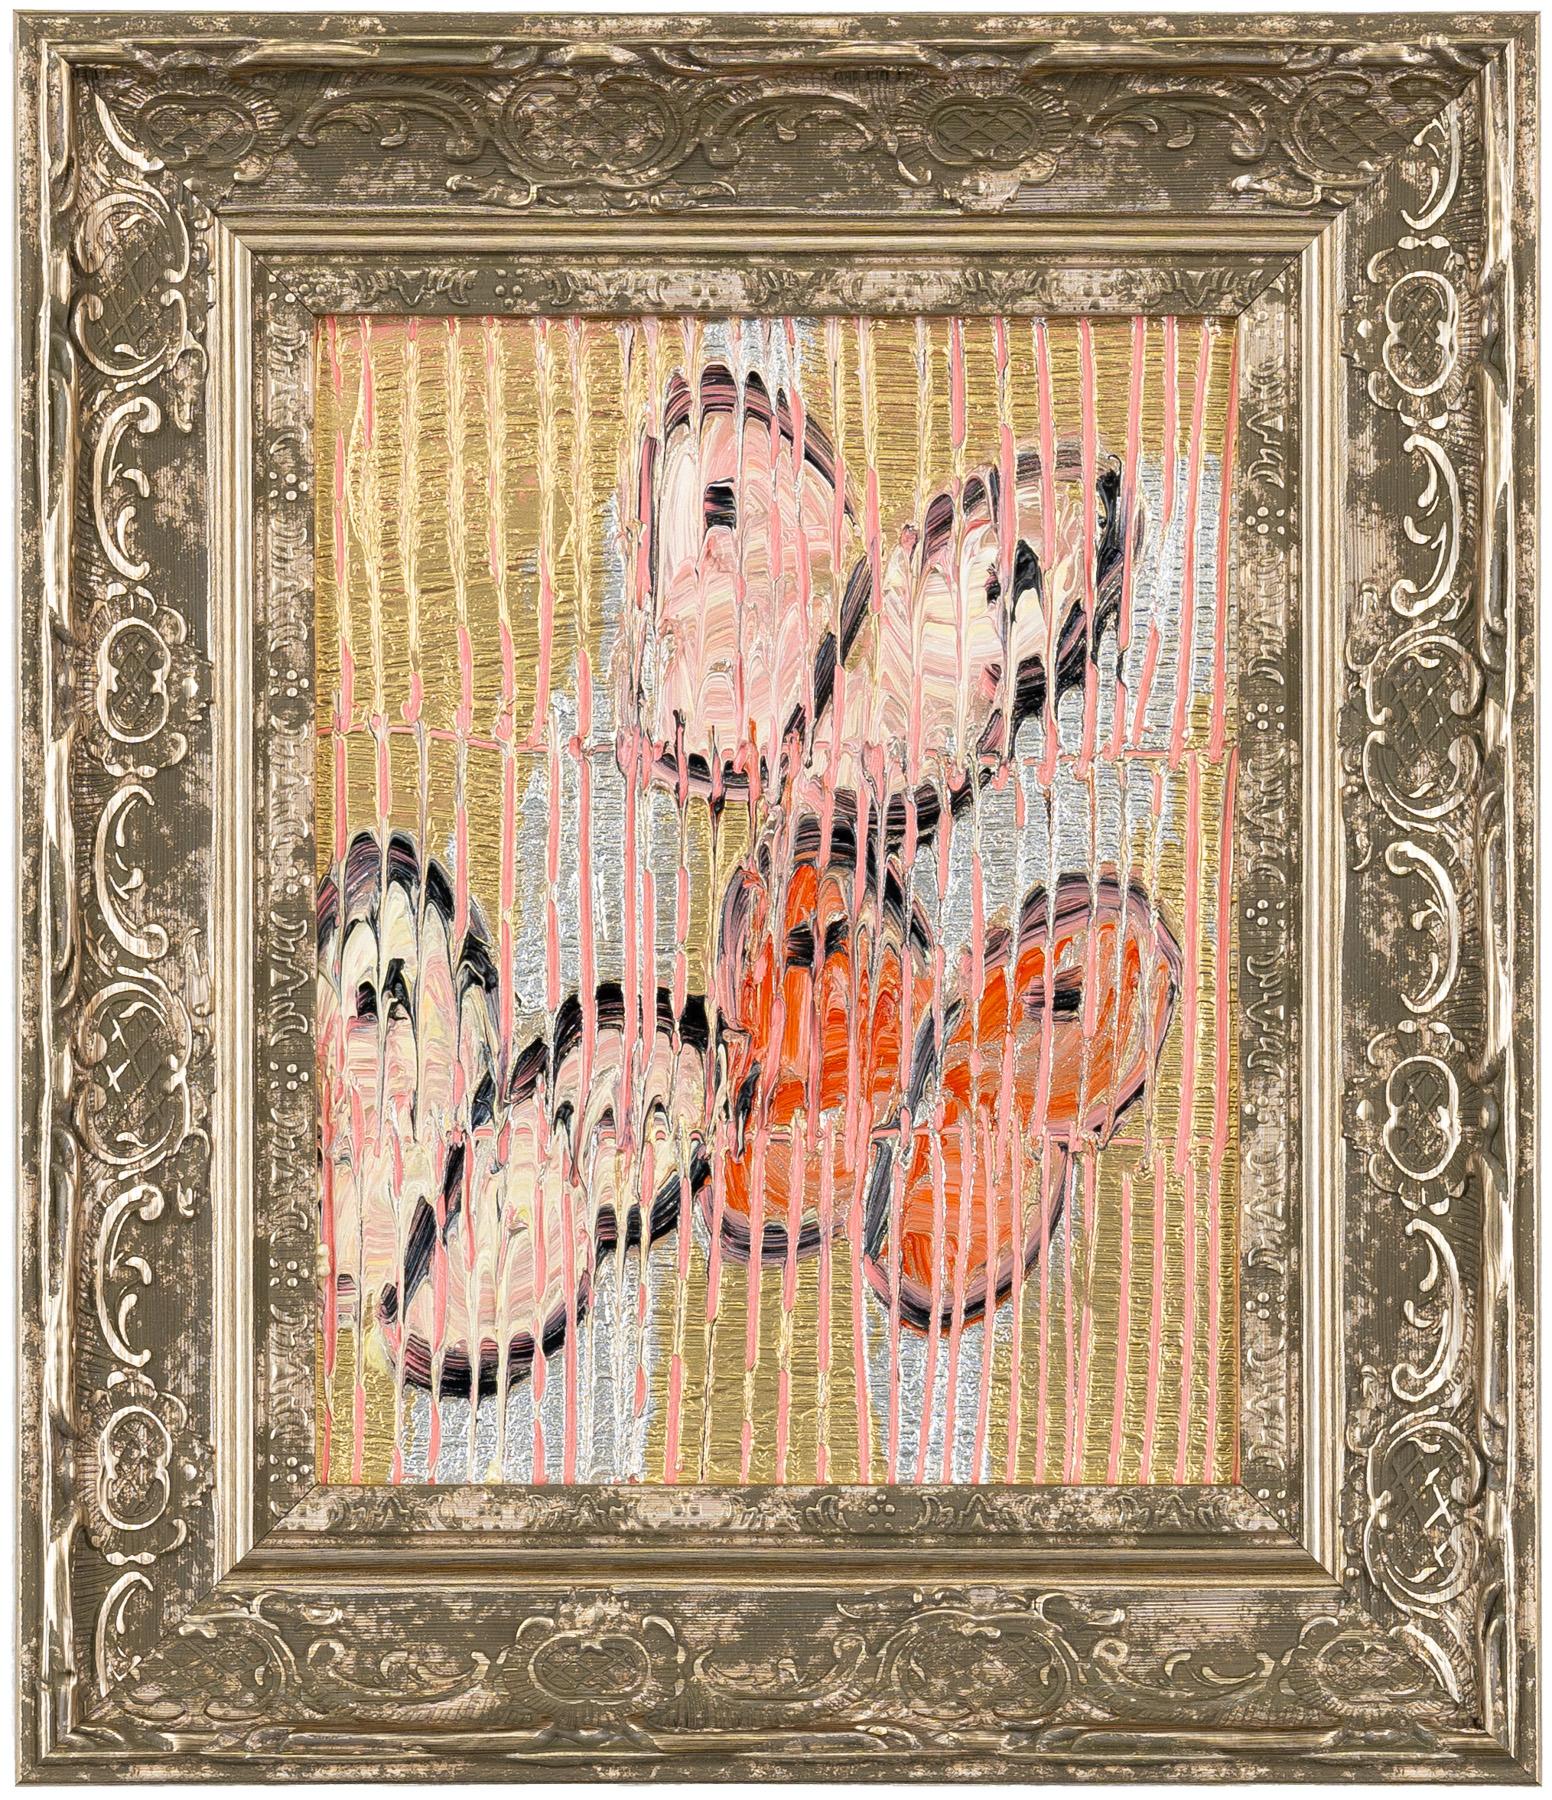 Hunt Slonem "Pink View" Papillons sur métal
Papillons roses et orange sur un fond métallisé doré et argenté gravé dans un cadre vintage.

Sans cadre : 10 x 8 pouces
Encadré : 14.5 x 12.5 pouces
*Les peintures sont encadrées - Veuillez noter que les